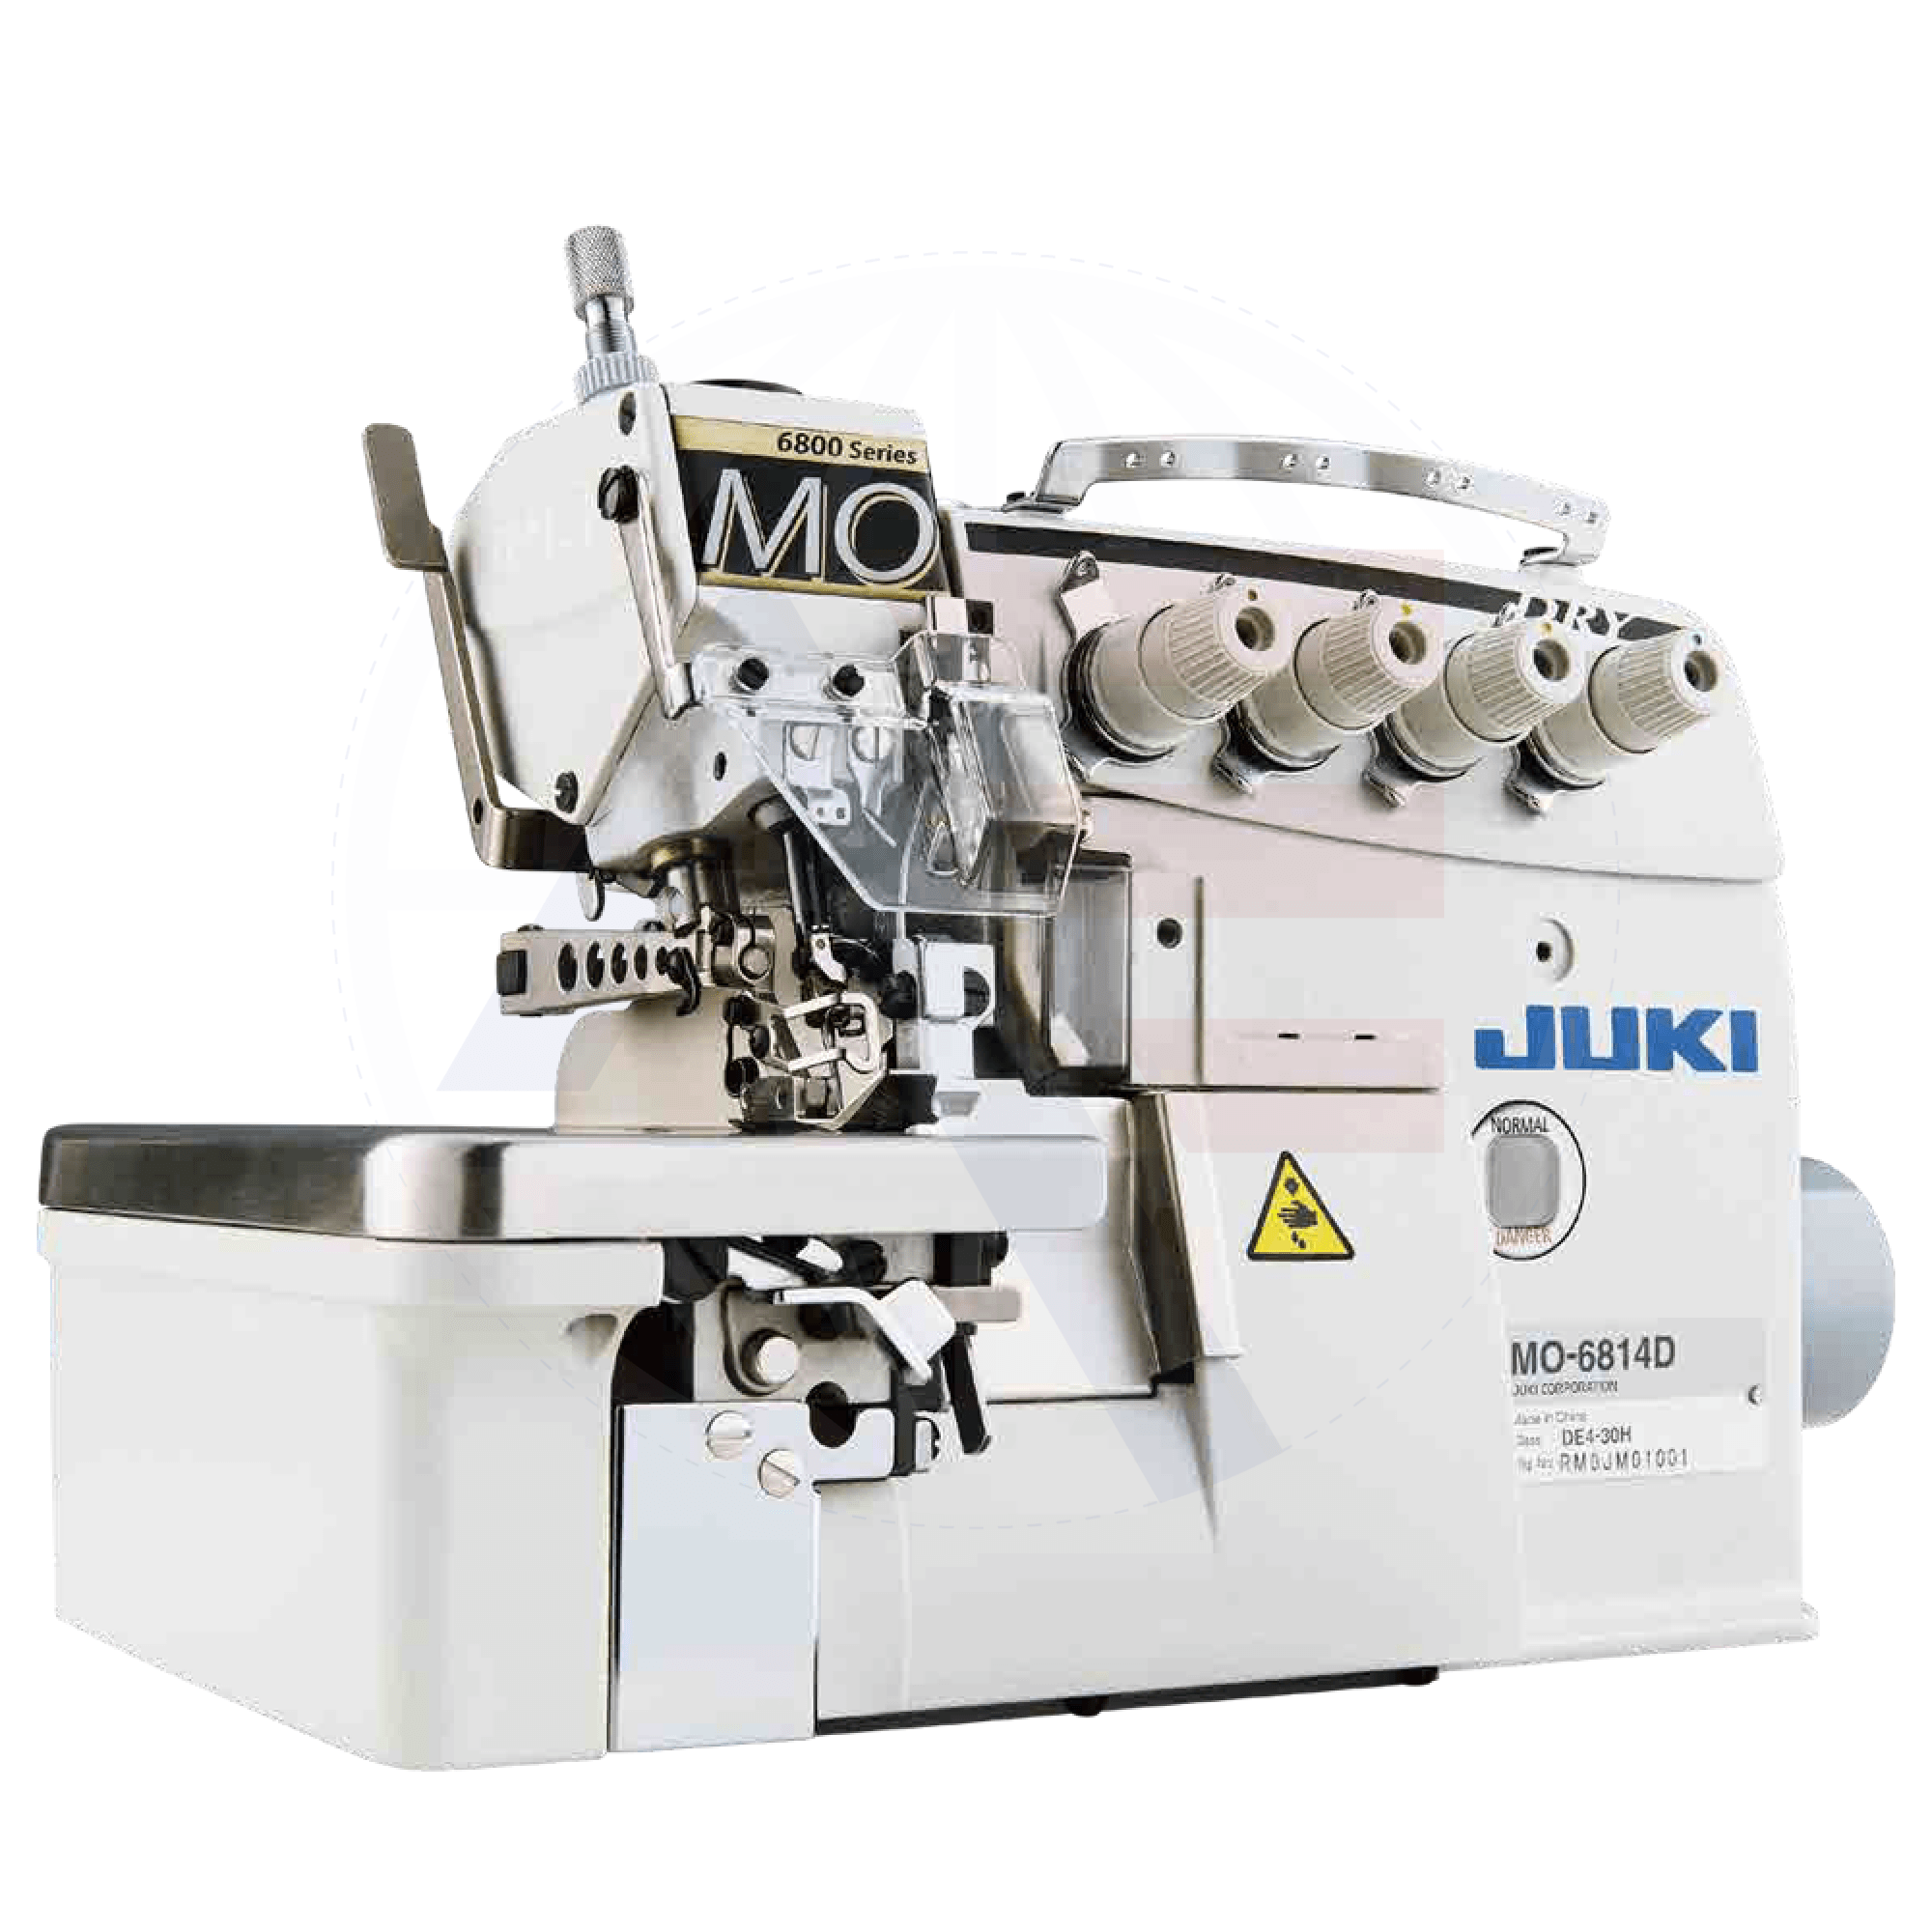 Juki Mo-6814D 4-Thread Overlock Machine Sewing Machines